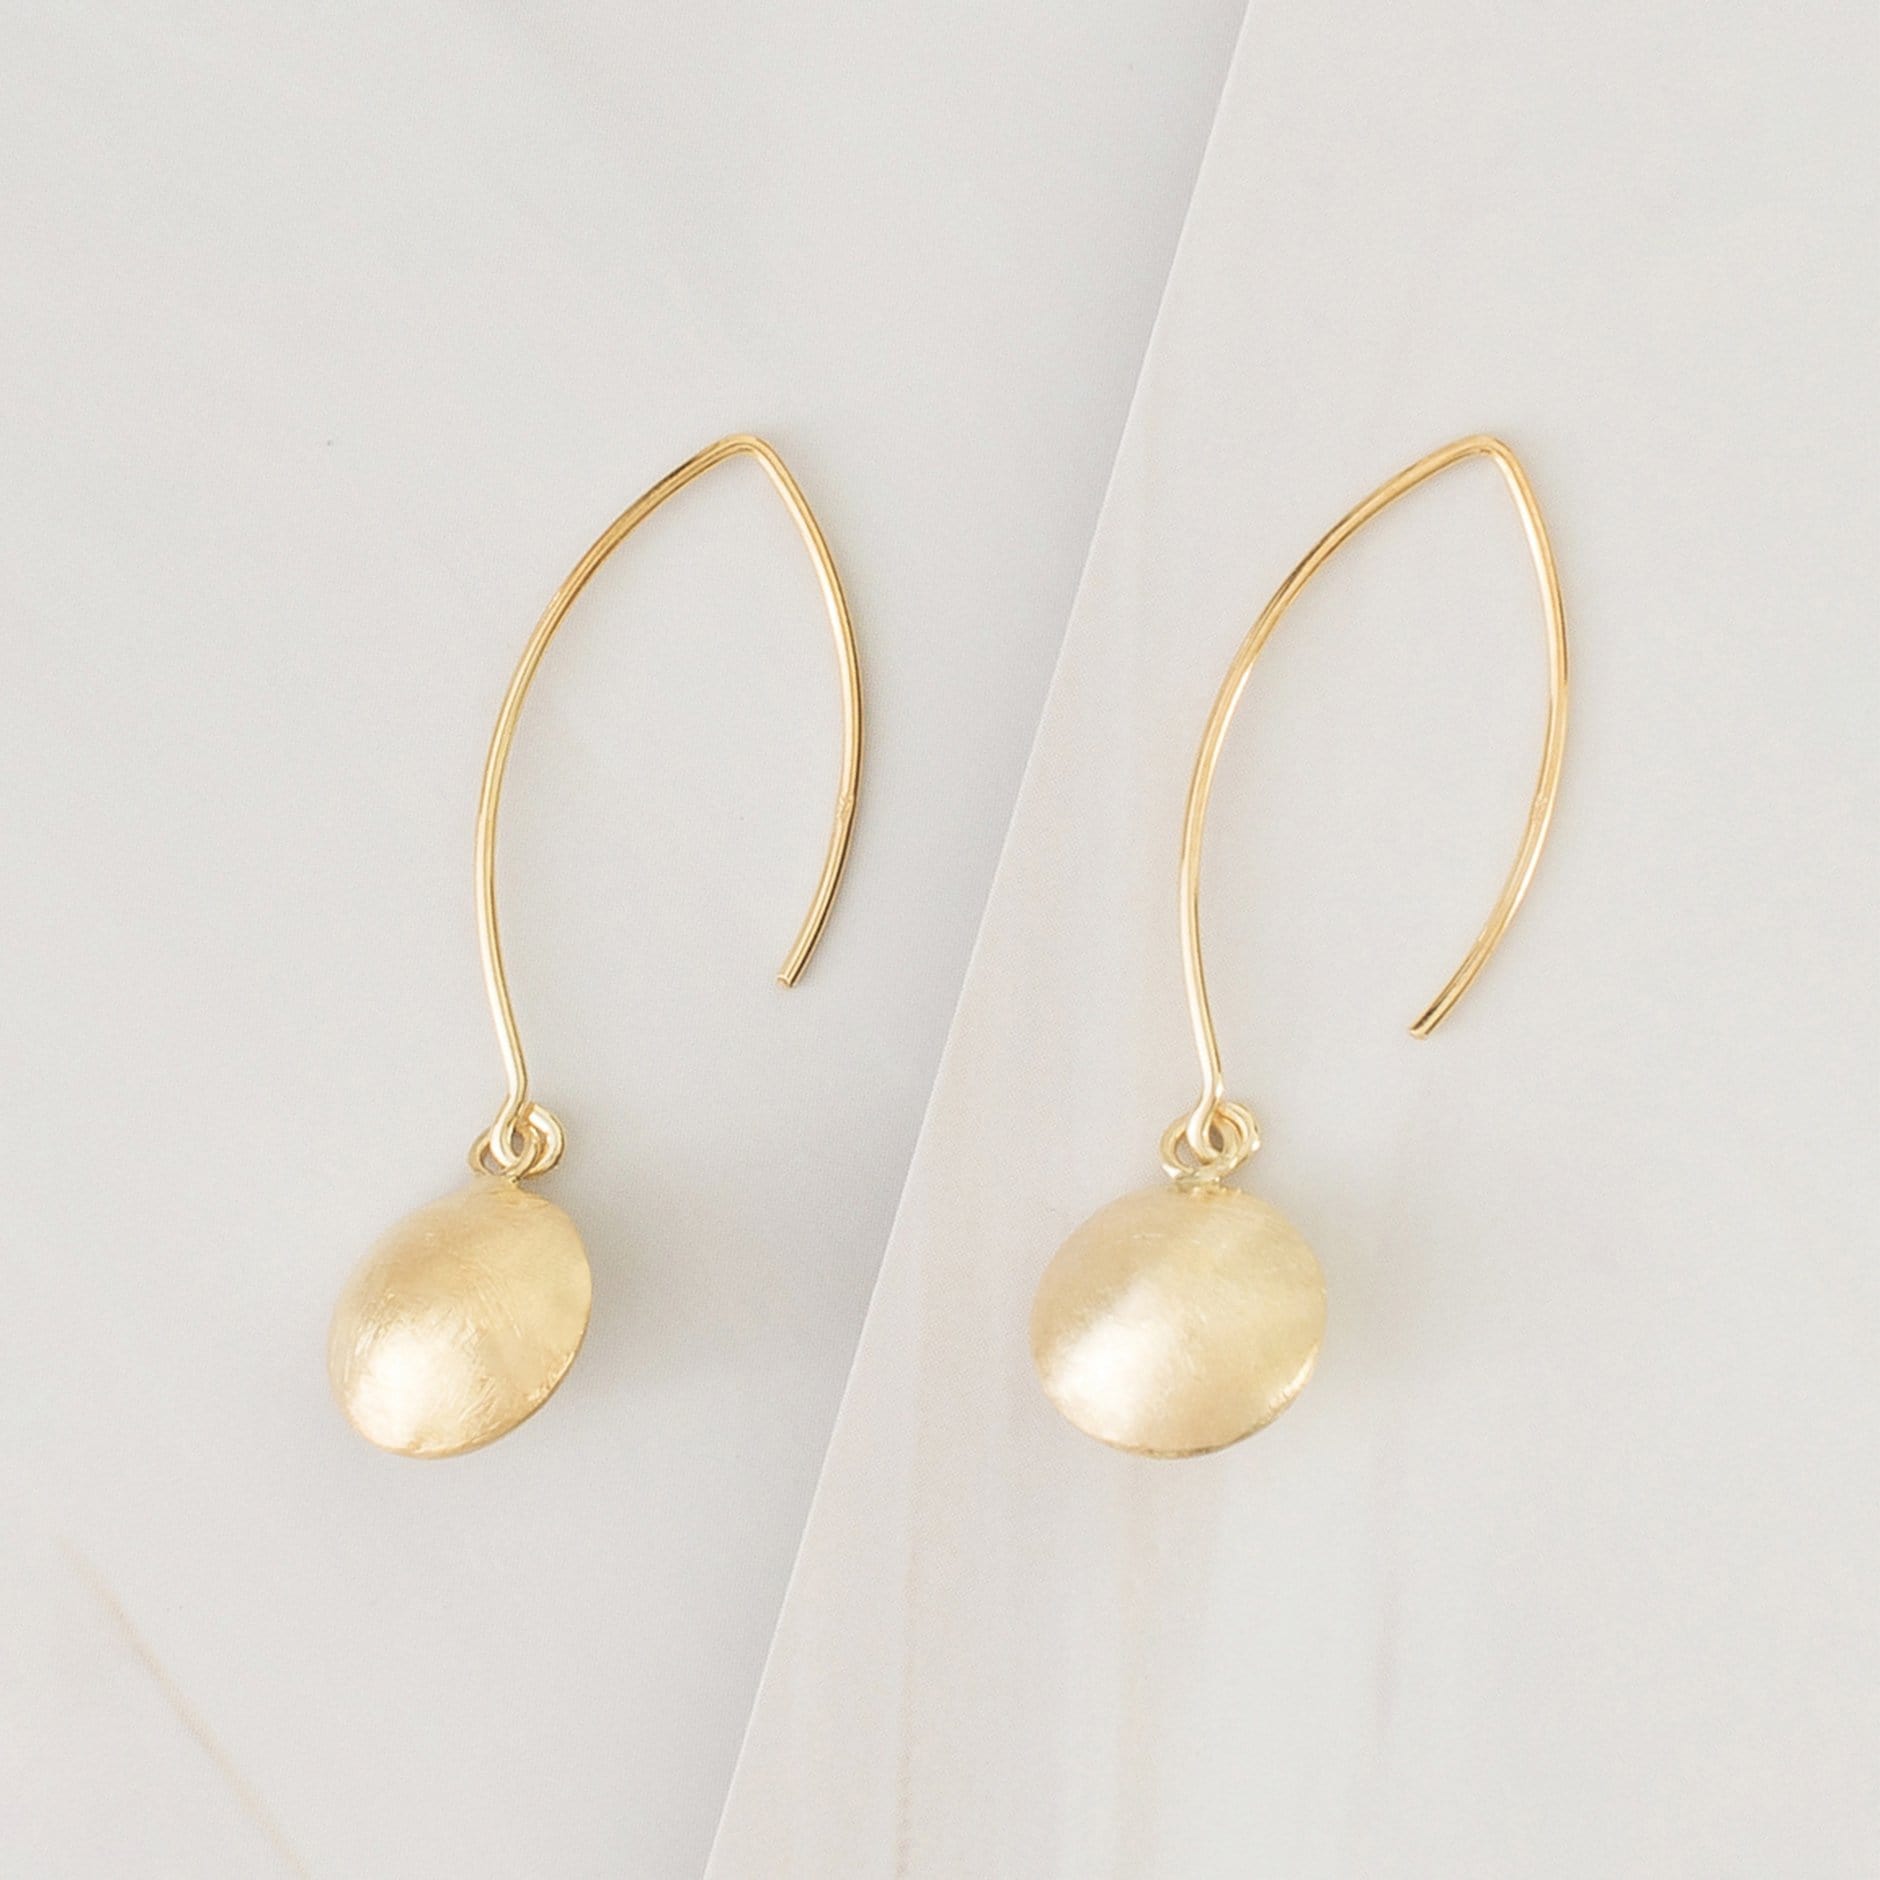 Emblem Jewelry Earrings Gold Tone Cymbal Drop Hook Earrings